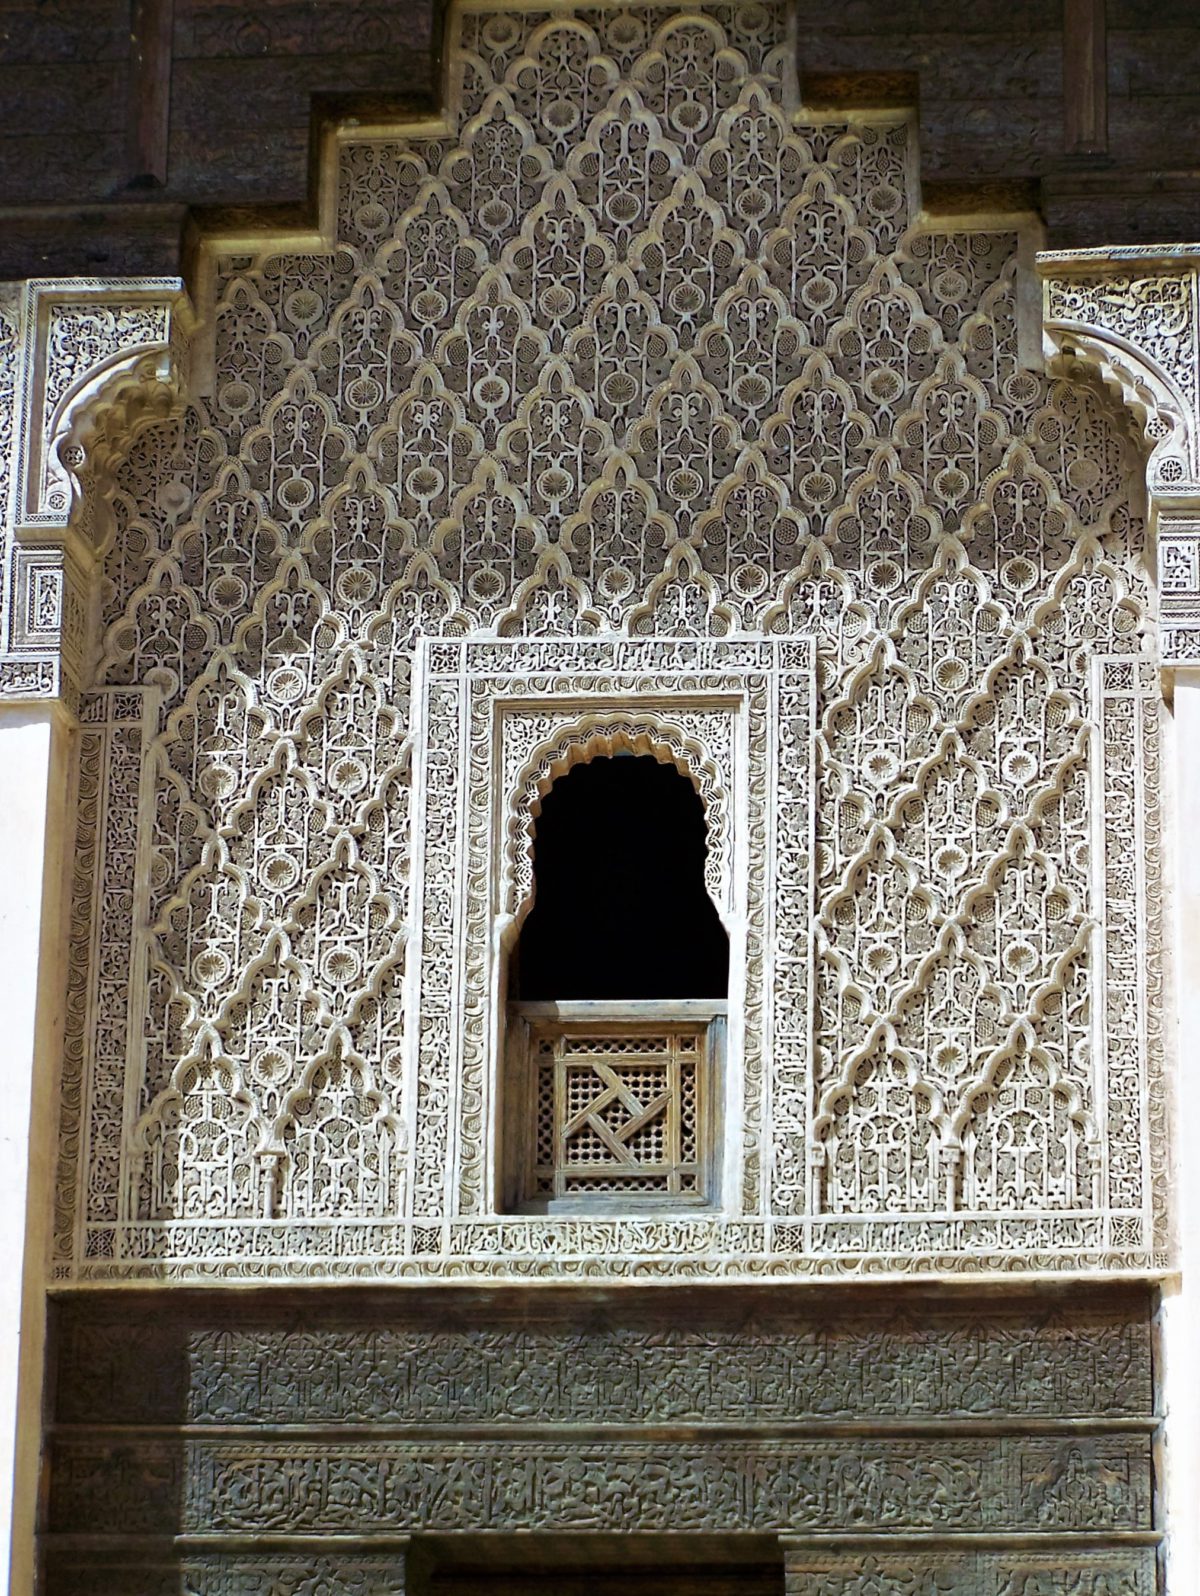 Ażurowe stiuki nawiązują do architektury mauretańskiej